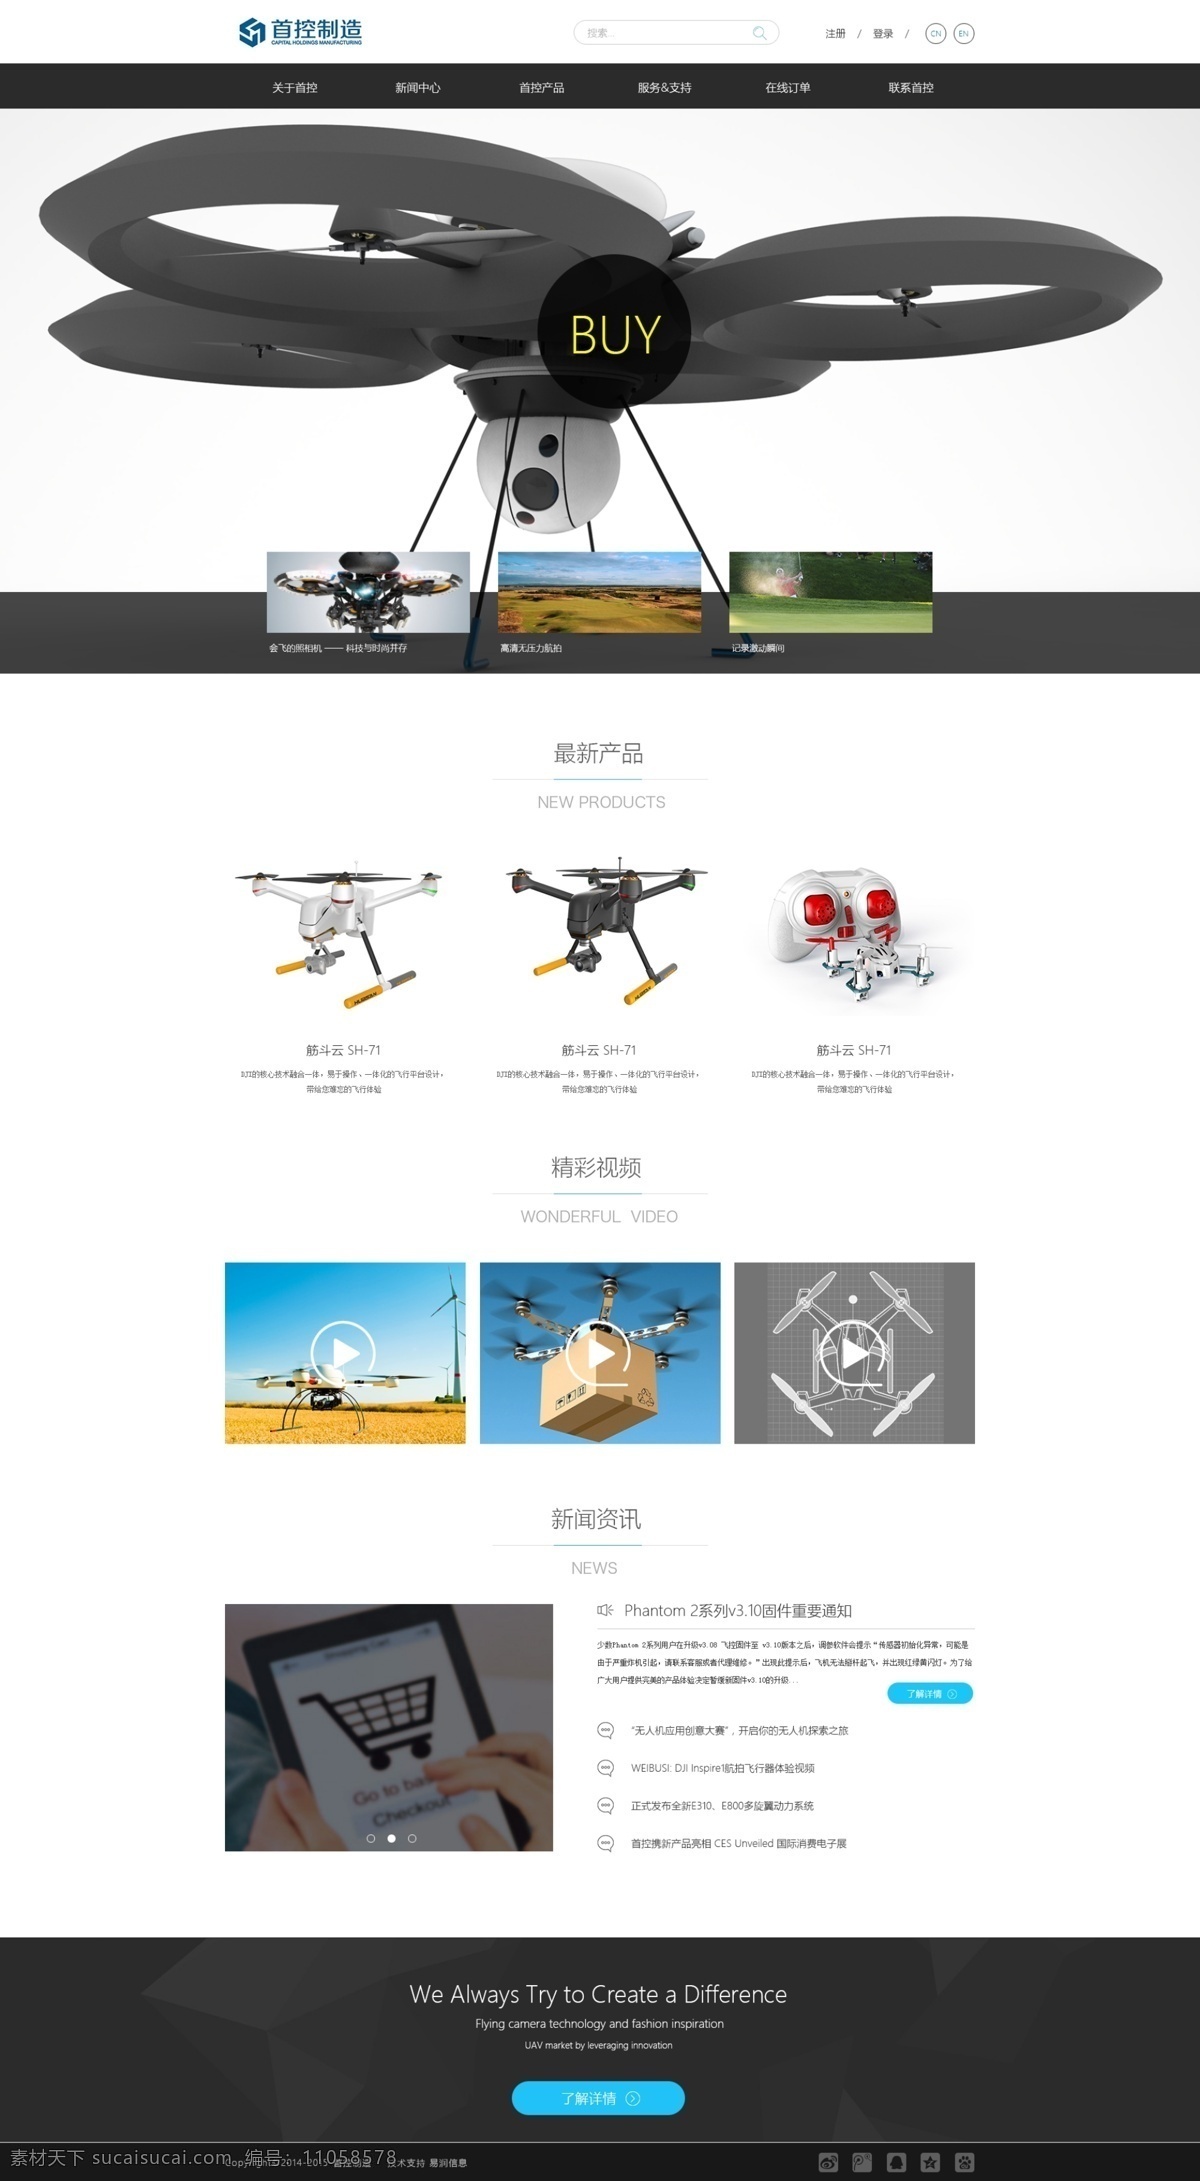 网站首页 网站 首页 黑色 黑白 简约 遥控 玩具 飞机 淘宝 电商 大气 模板 界面 网站页面 web 界面设计 中文模板 白色